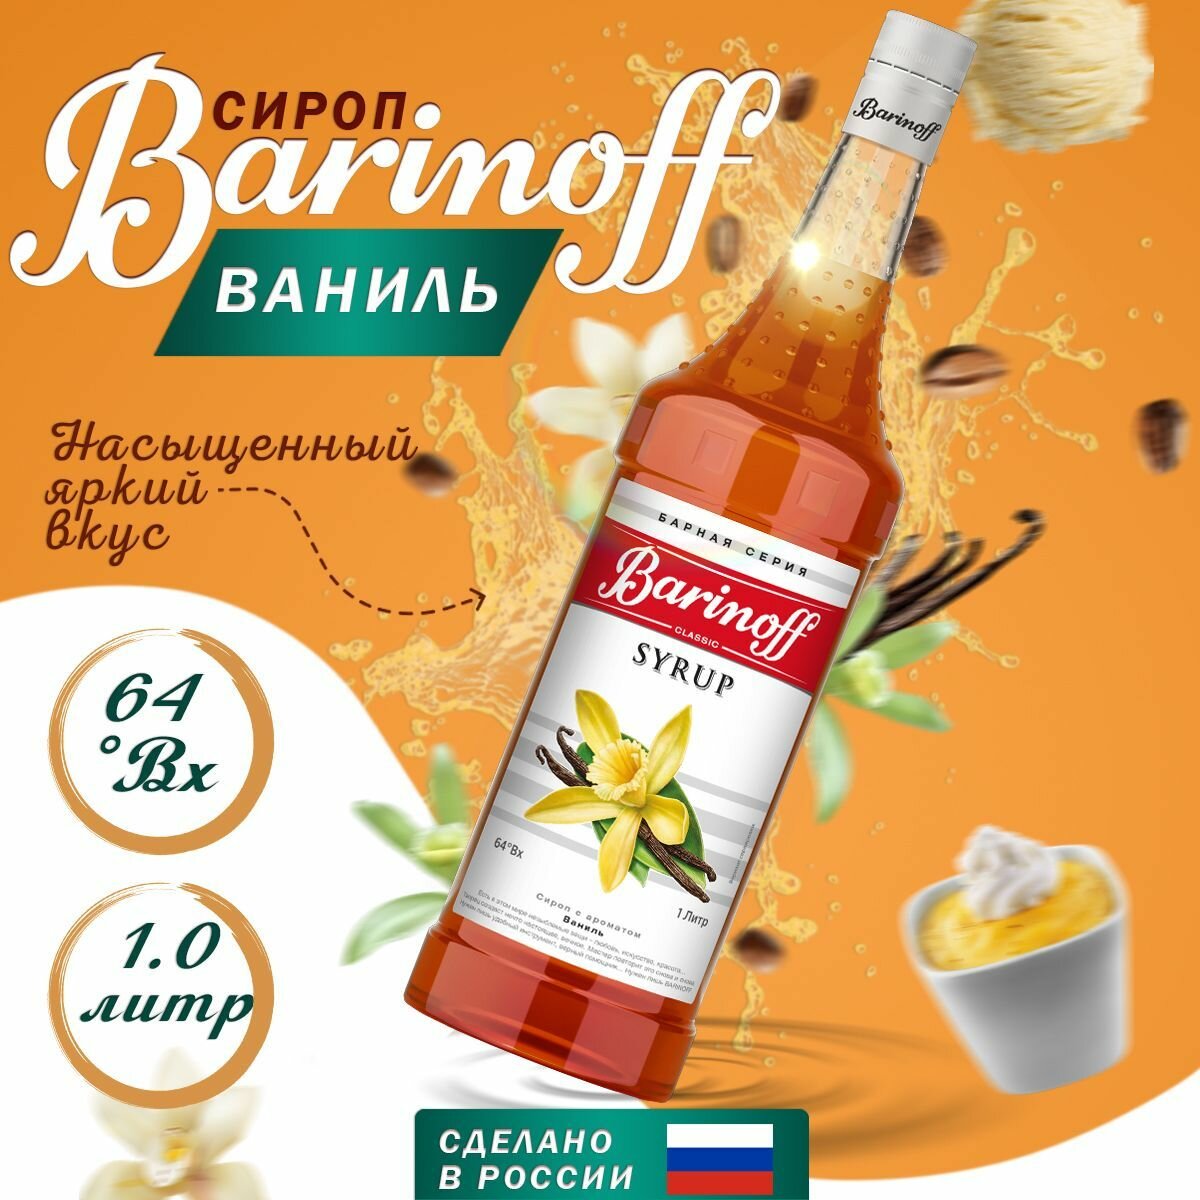 Сироп Barinoff для кофе и коктейлей